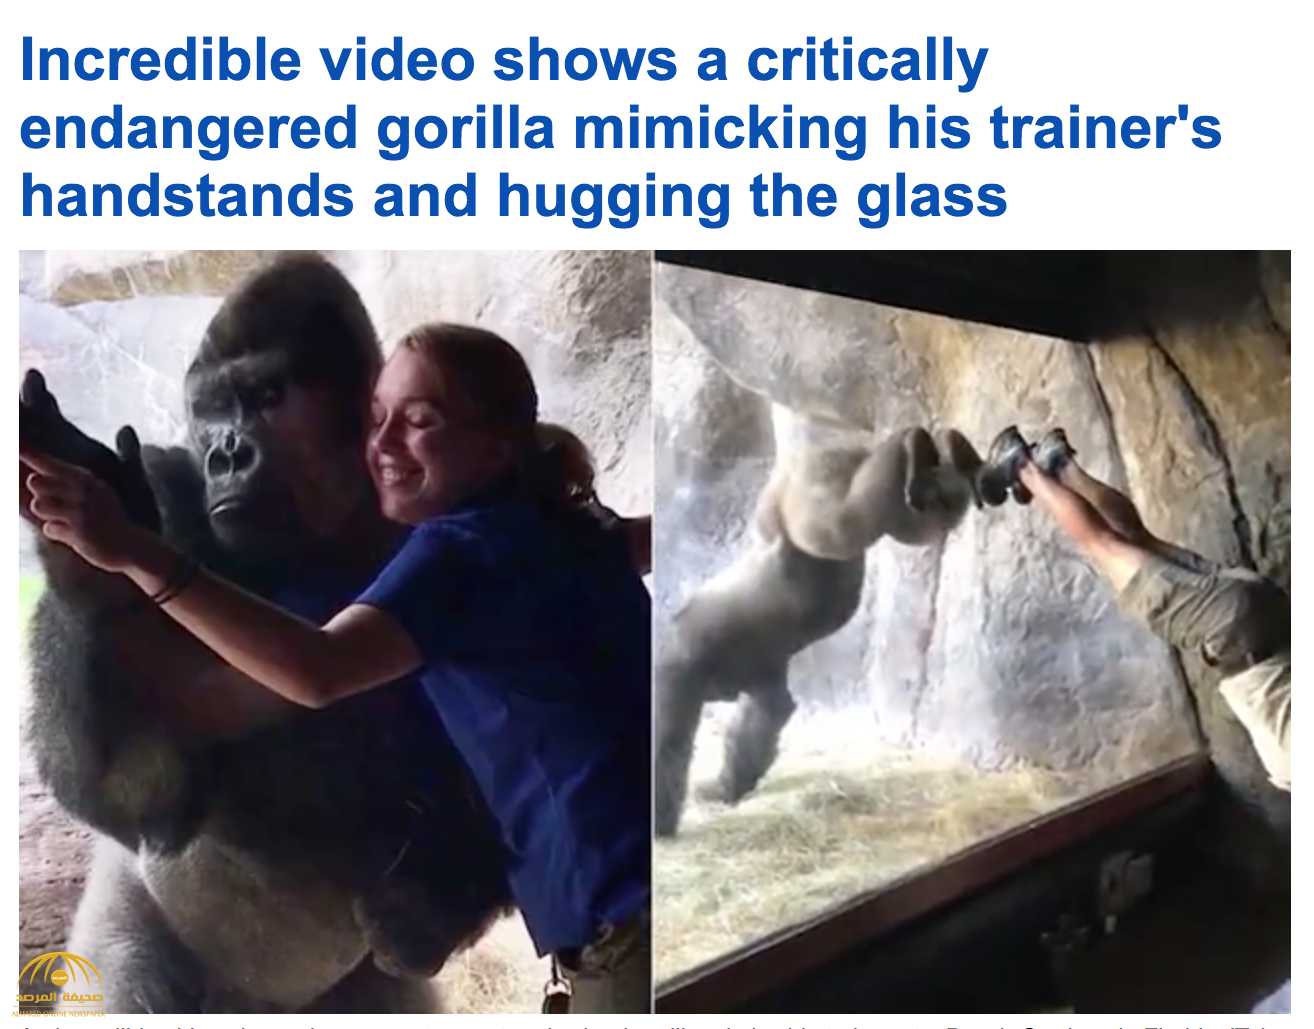 شاهد بالفيديو: ذكر غوريلا يحتضن مدربته عبر الزجاج و يقلد حركاتها في حديقة حيوان بفلوريدا